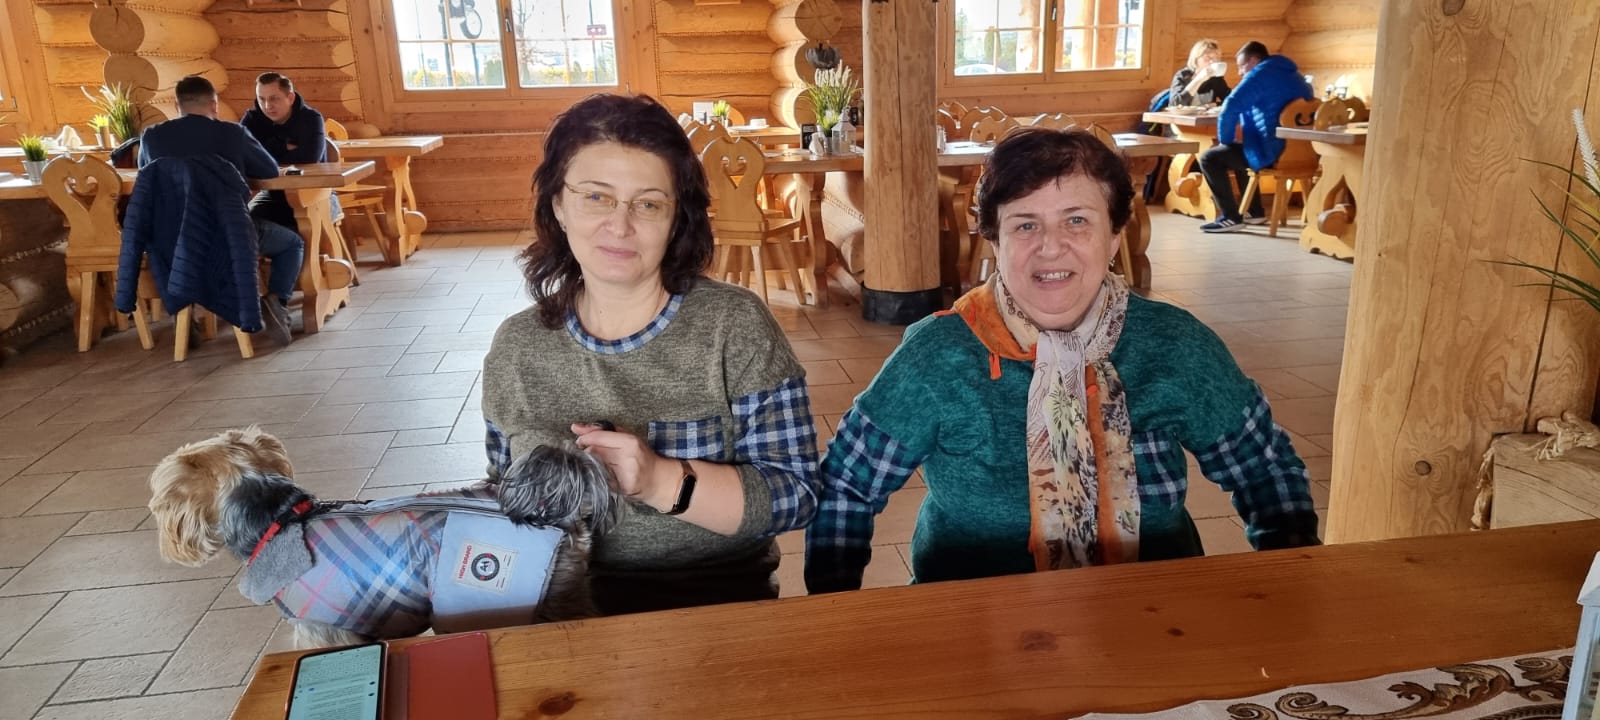 אנה ומאשה שברחו עצמאית מקייב והגיעו לתחנת המעבר בפולין